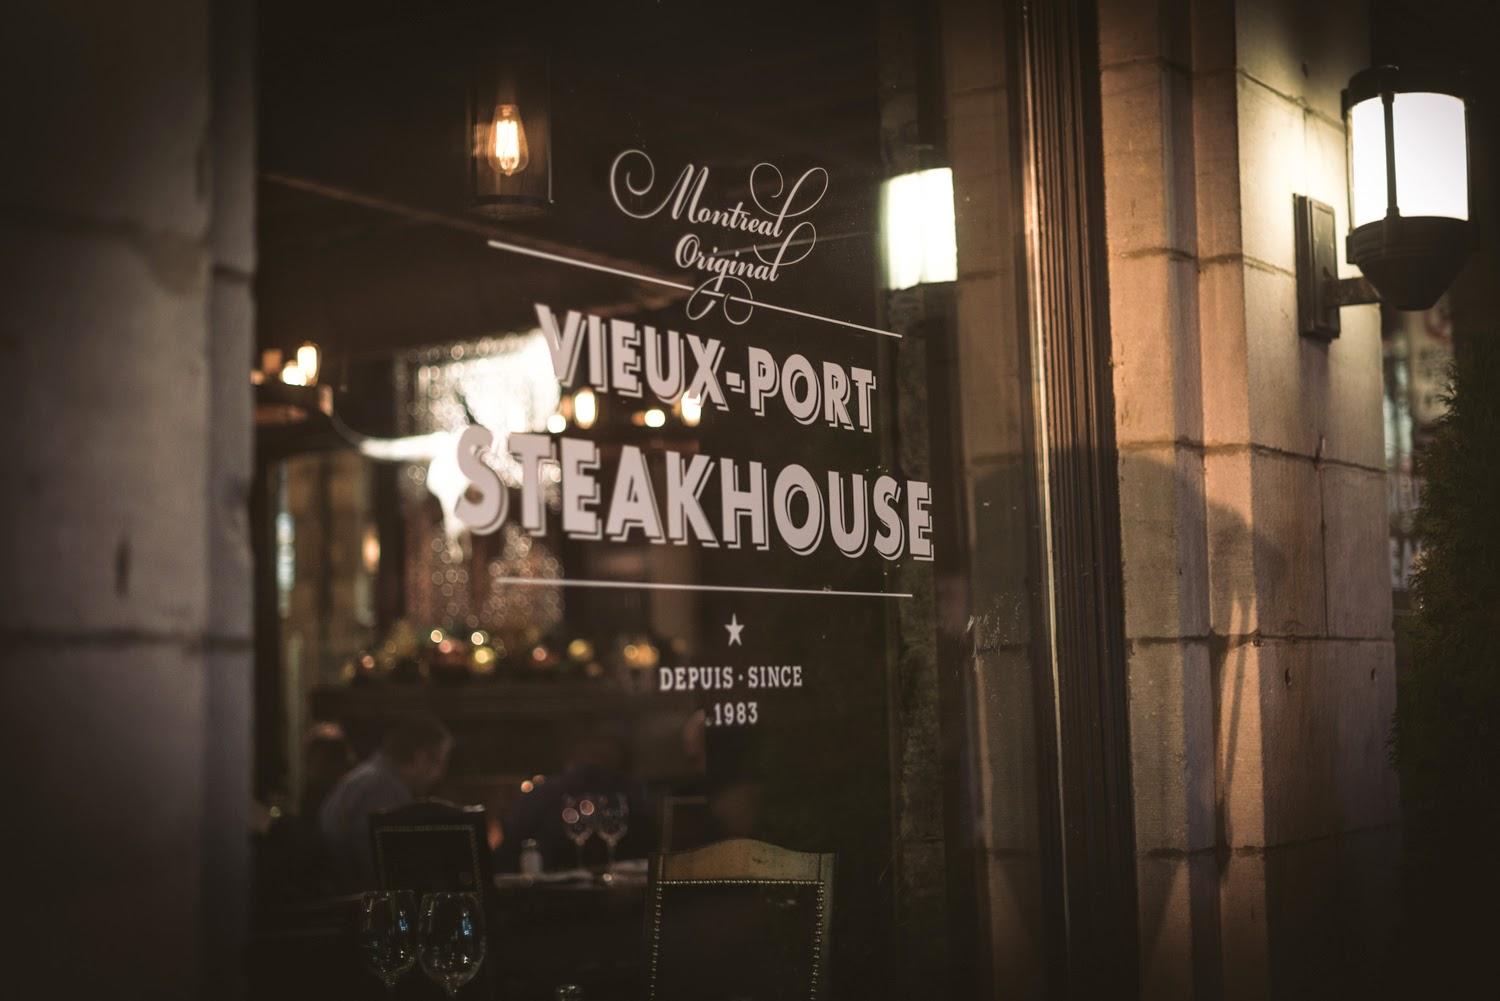 Steakhouse Vieux-Port: déjà 30 ans, et on en veut 30 autres!